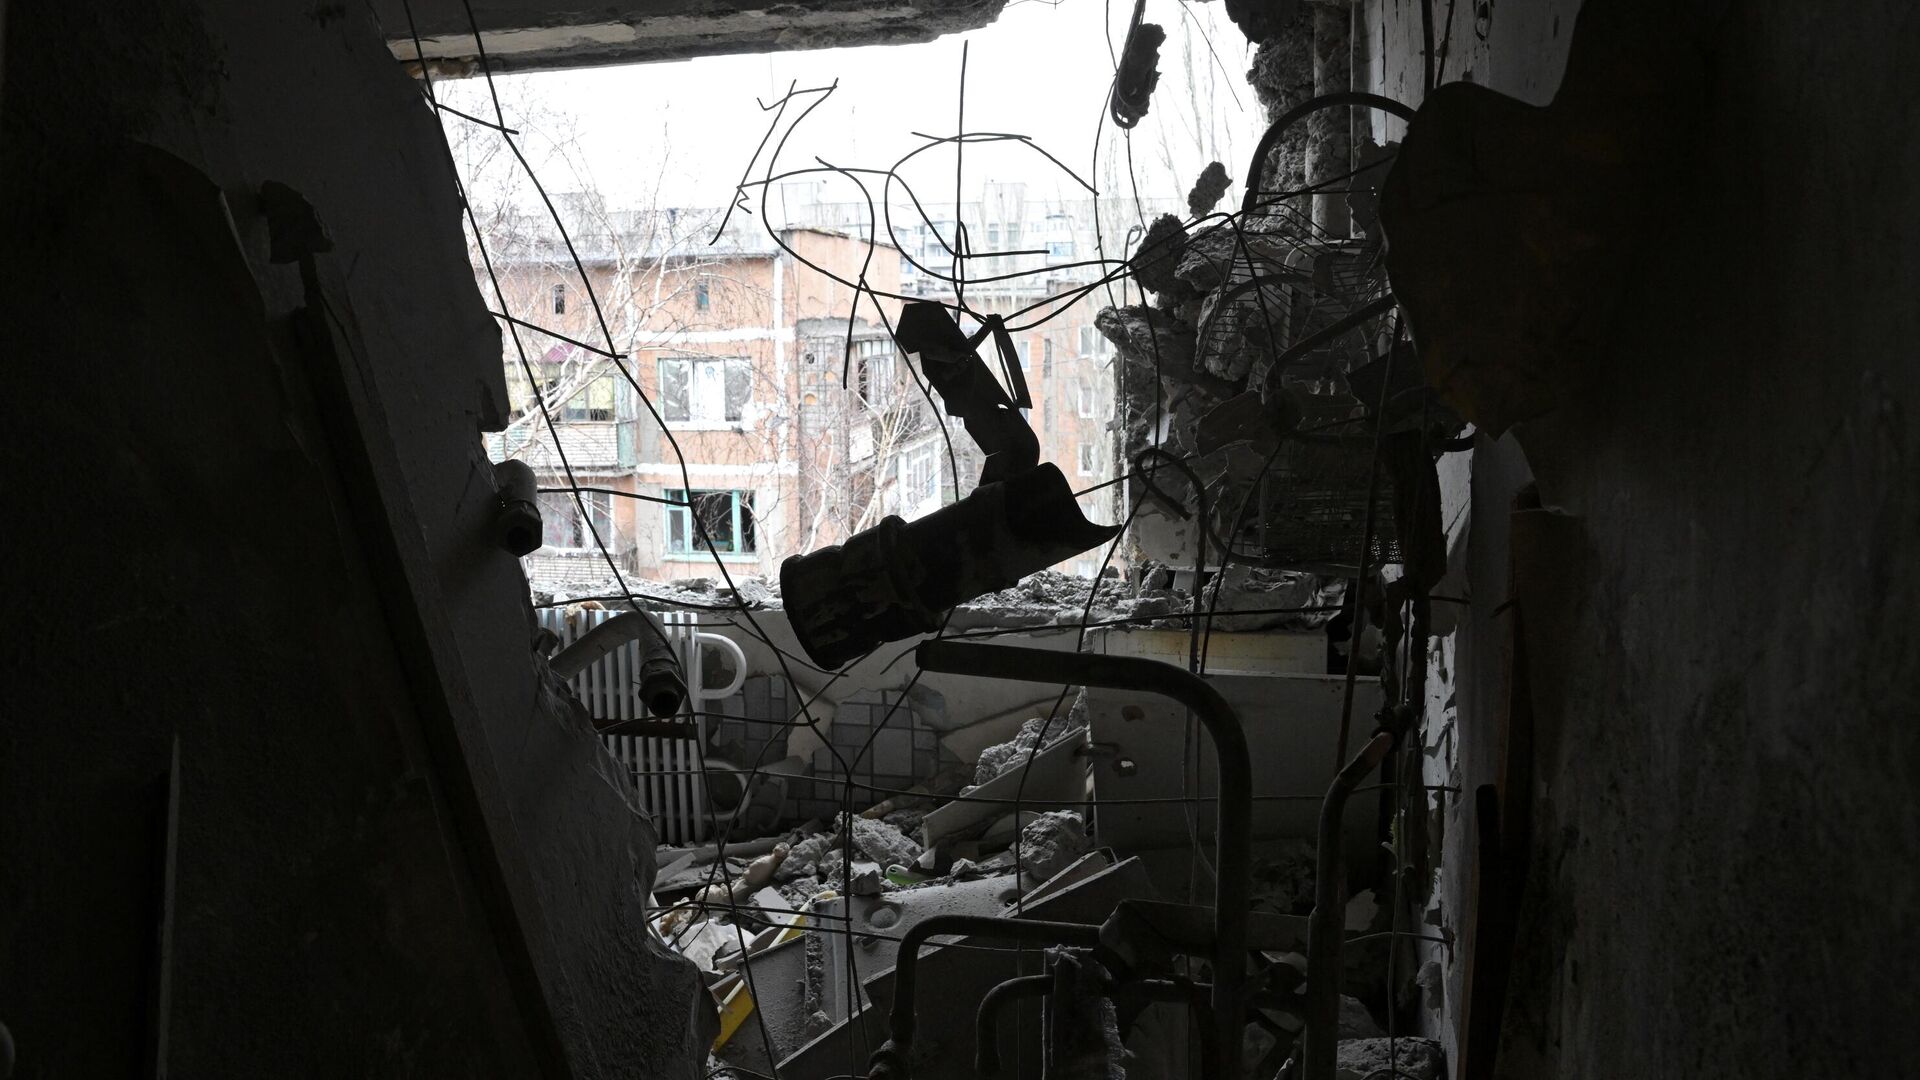 Квартира, пострадавшая в результате прямого попадания снаряда в жилой дом в Горловке - РИА Новости, 1920, 05.06.2022